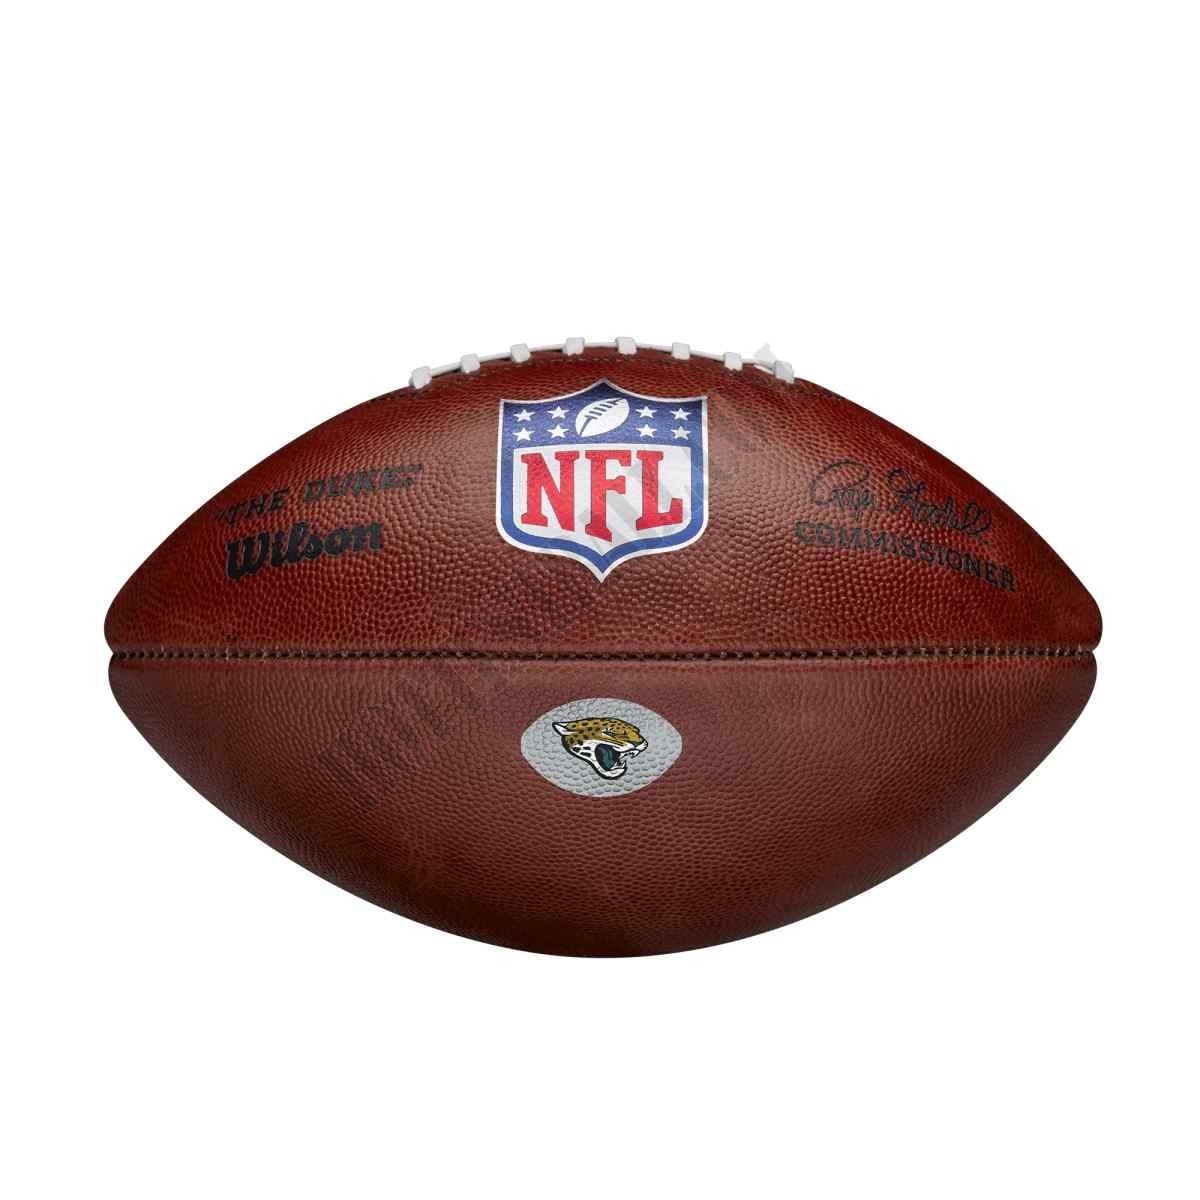 The Duke Decal NFL Football - Jacksonville Jaguars ● Wilson Promotions - The Duke Decal NFL Football - Jacksonville Jaguars ● Wilson Promotions